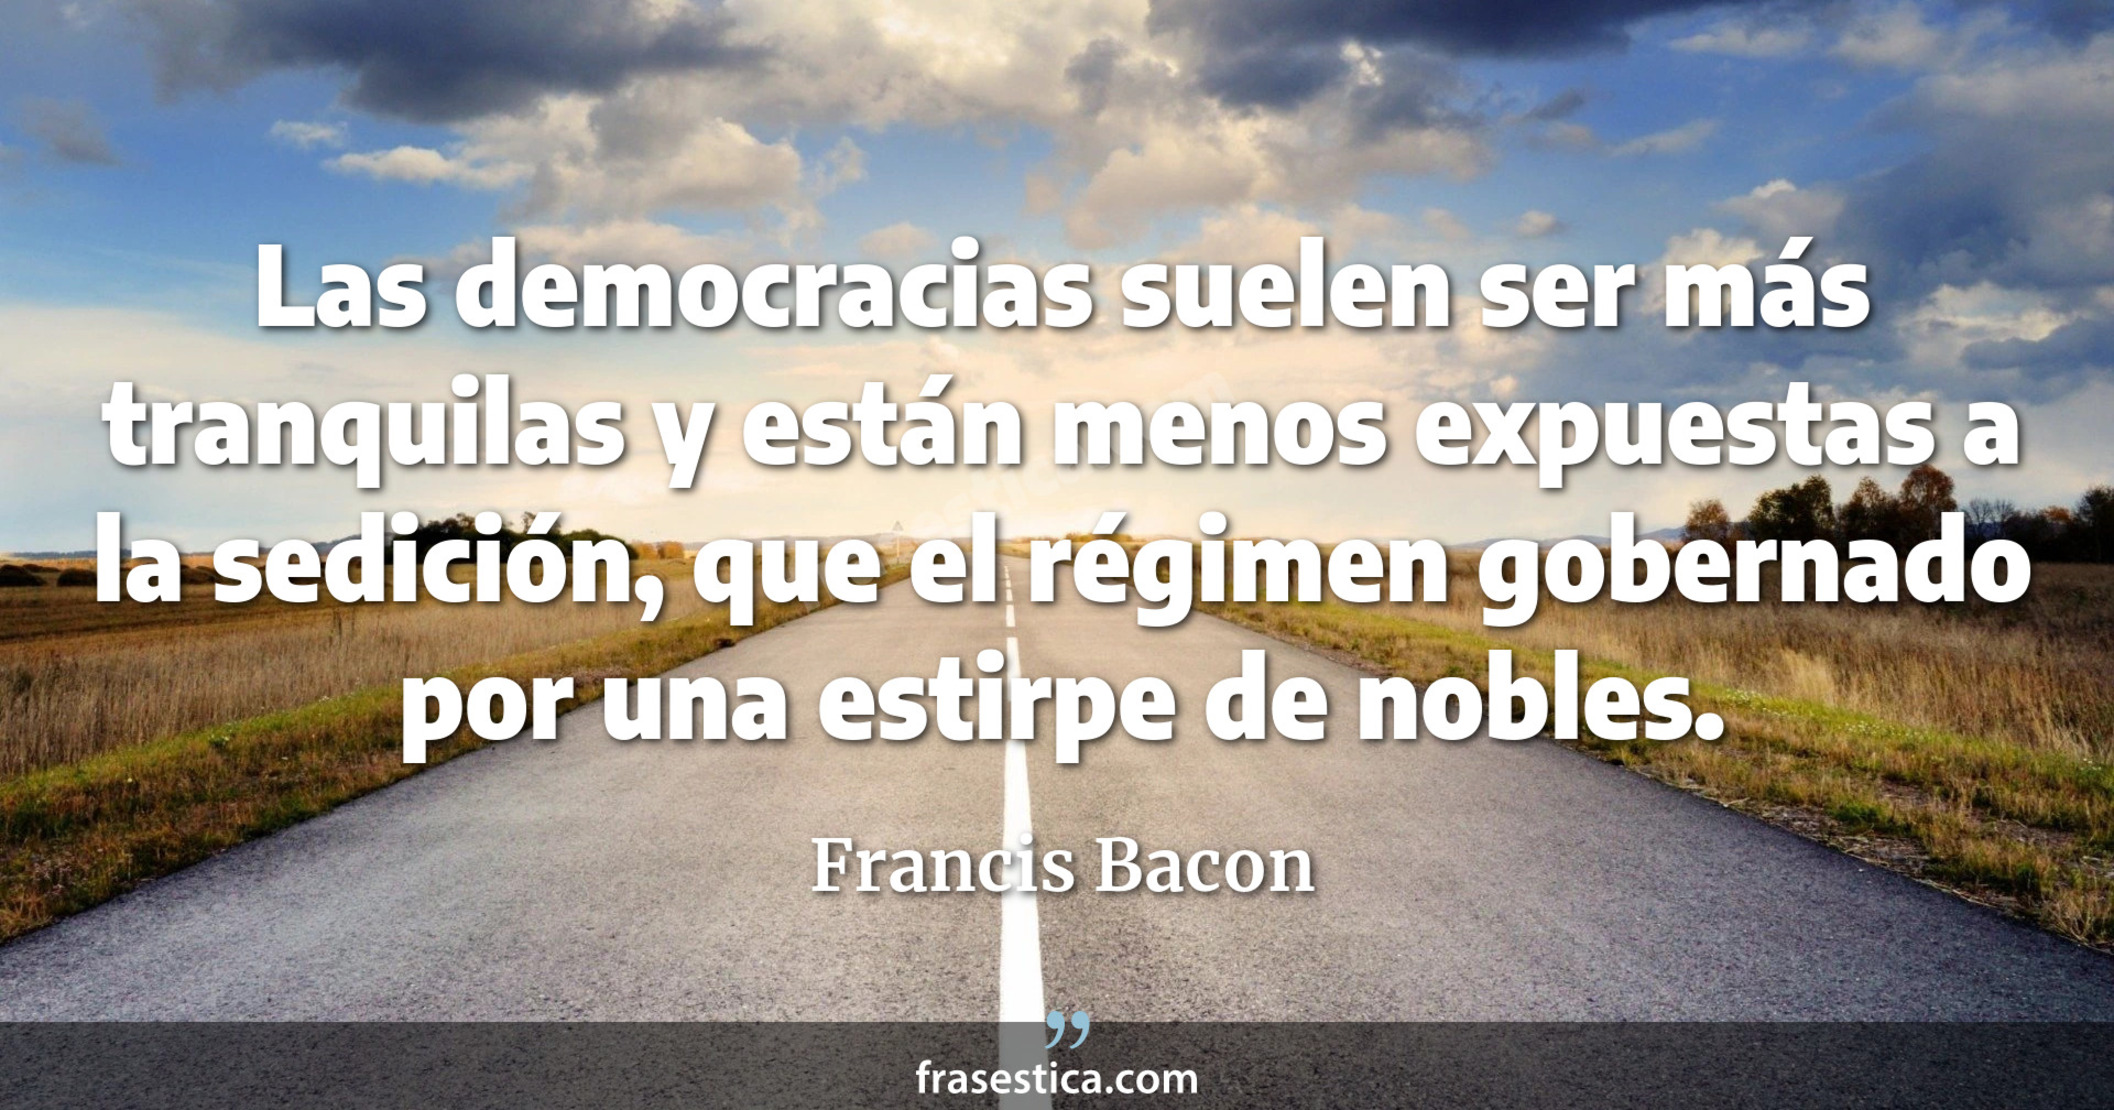 Las democracias suelen ser más tranquilas y están menos expuestas a la sedición, que el régimen gobernado por una estirpe de nobles. - Francis Bacon